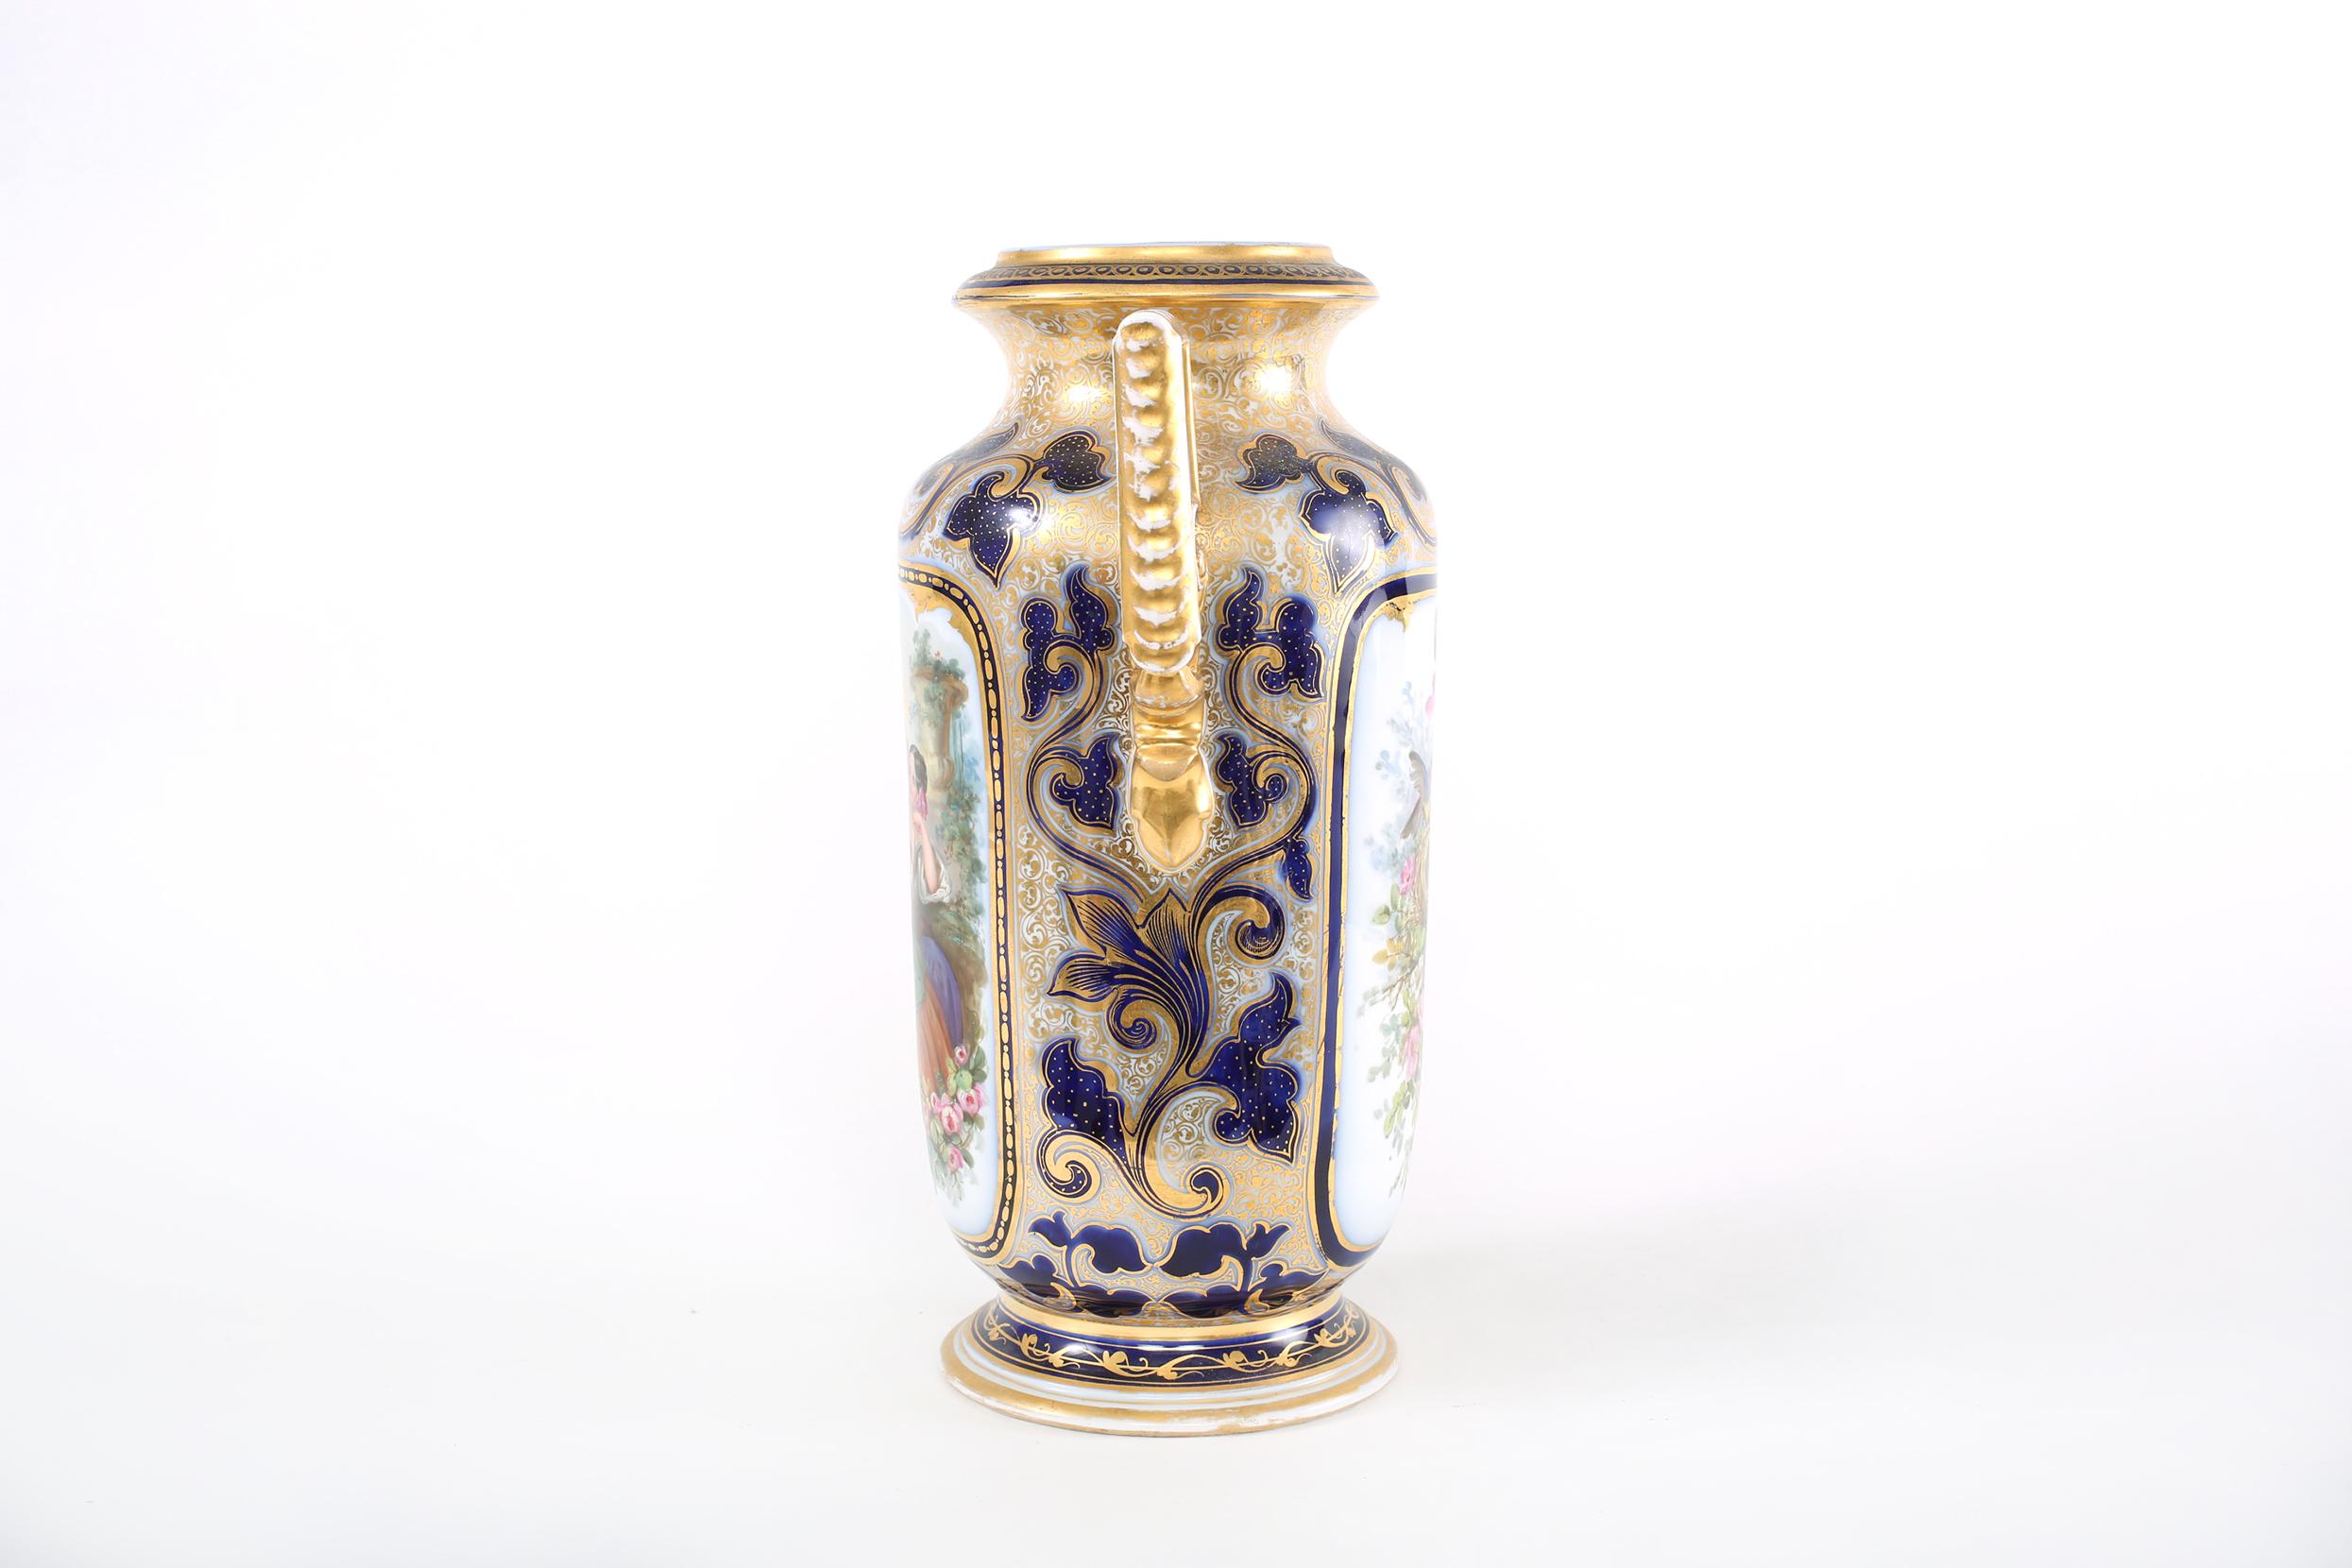  French Porcelain Decorative Vase  / Side Handles For Sale 3